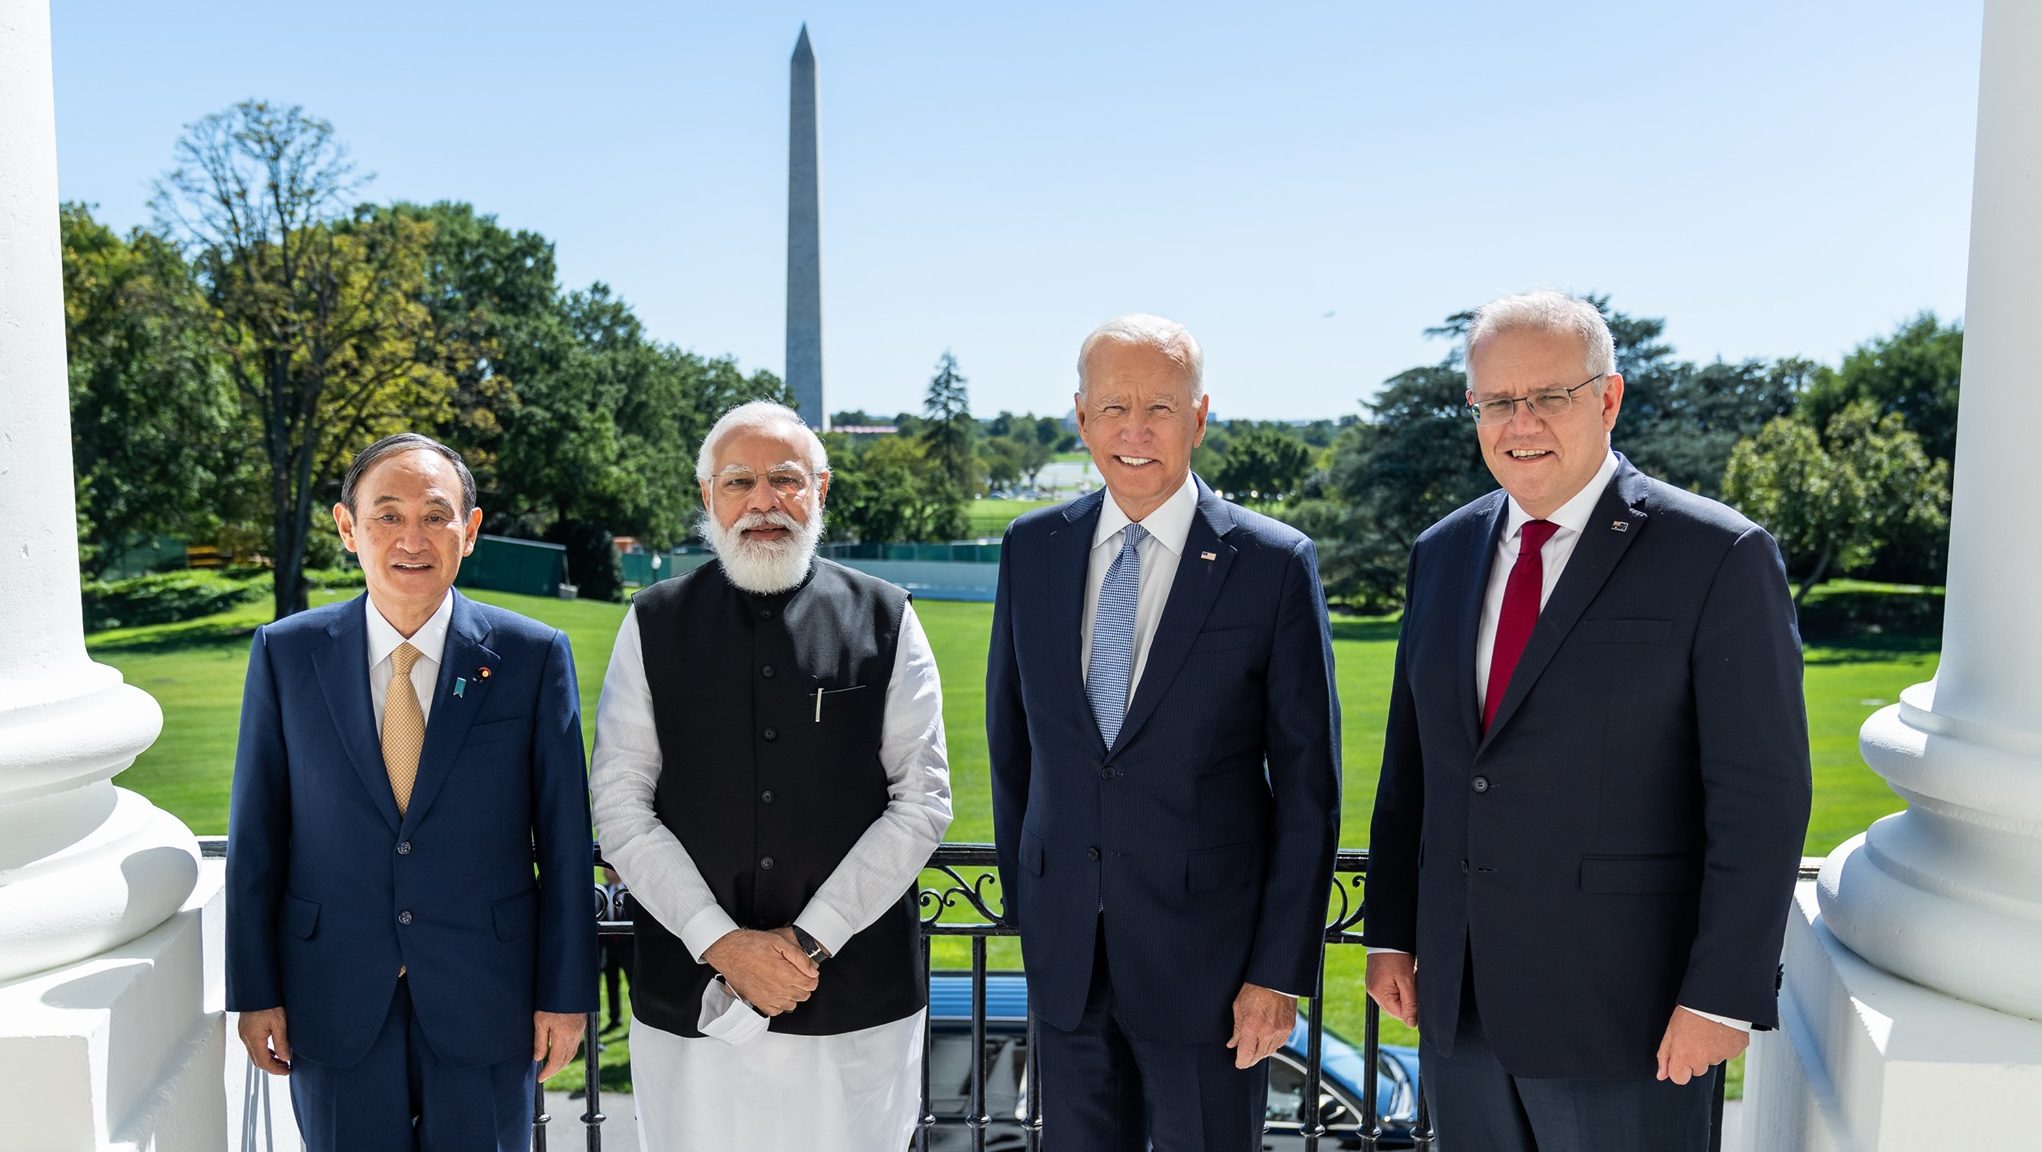 Các lãnh đạo của Bộ Tứ nhân hội nghị thượng đỉnh tại Washington DC hôm 24/9/2021. Từ trái: Thủ Tướng Nhật Sugar, Thủ Tướng Ấn Độ Modi, Tổng Thống Mỹ Biden và Thủ Tướng Úc Morrison. Ảnh: FB President Joe Biden